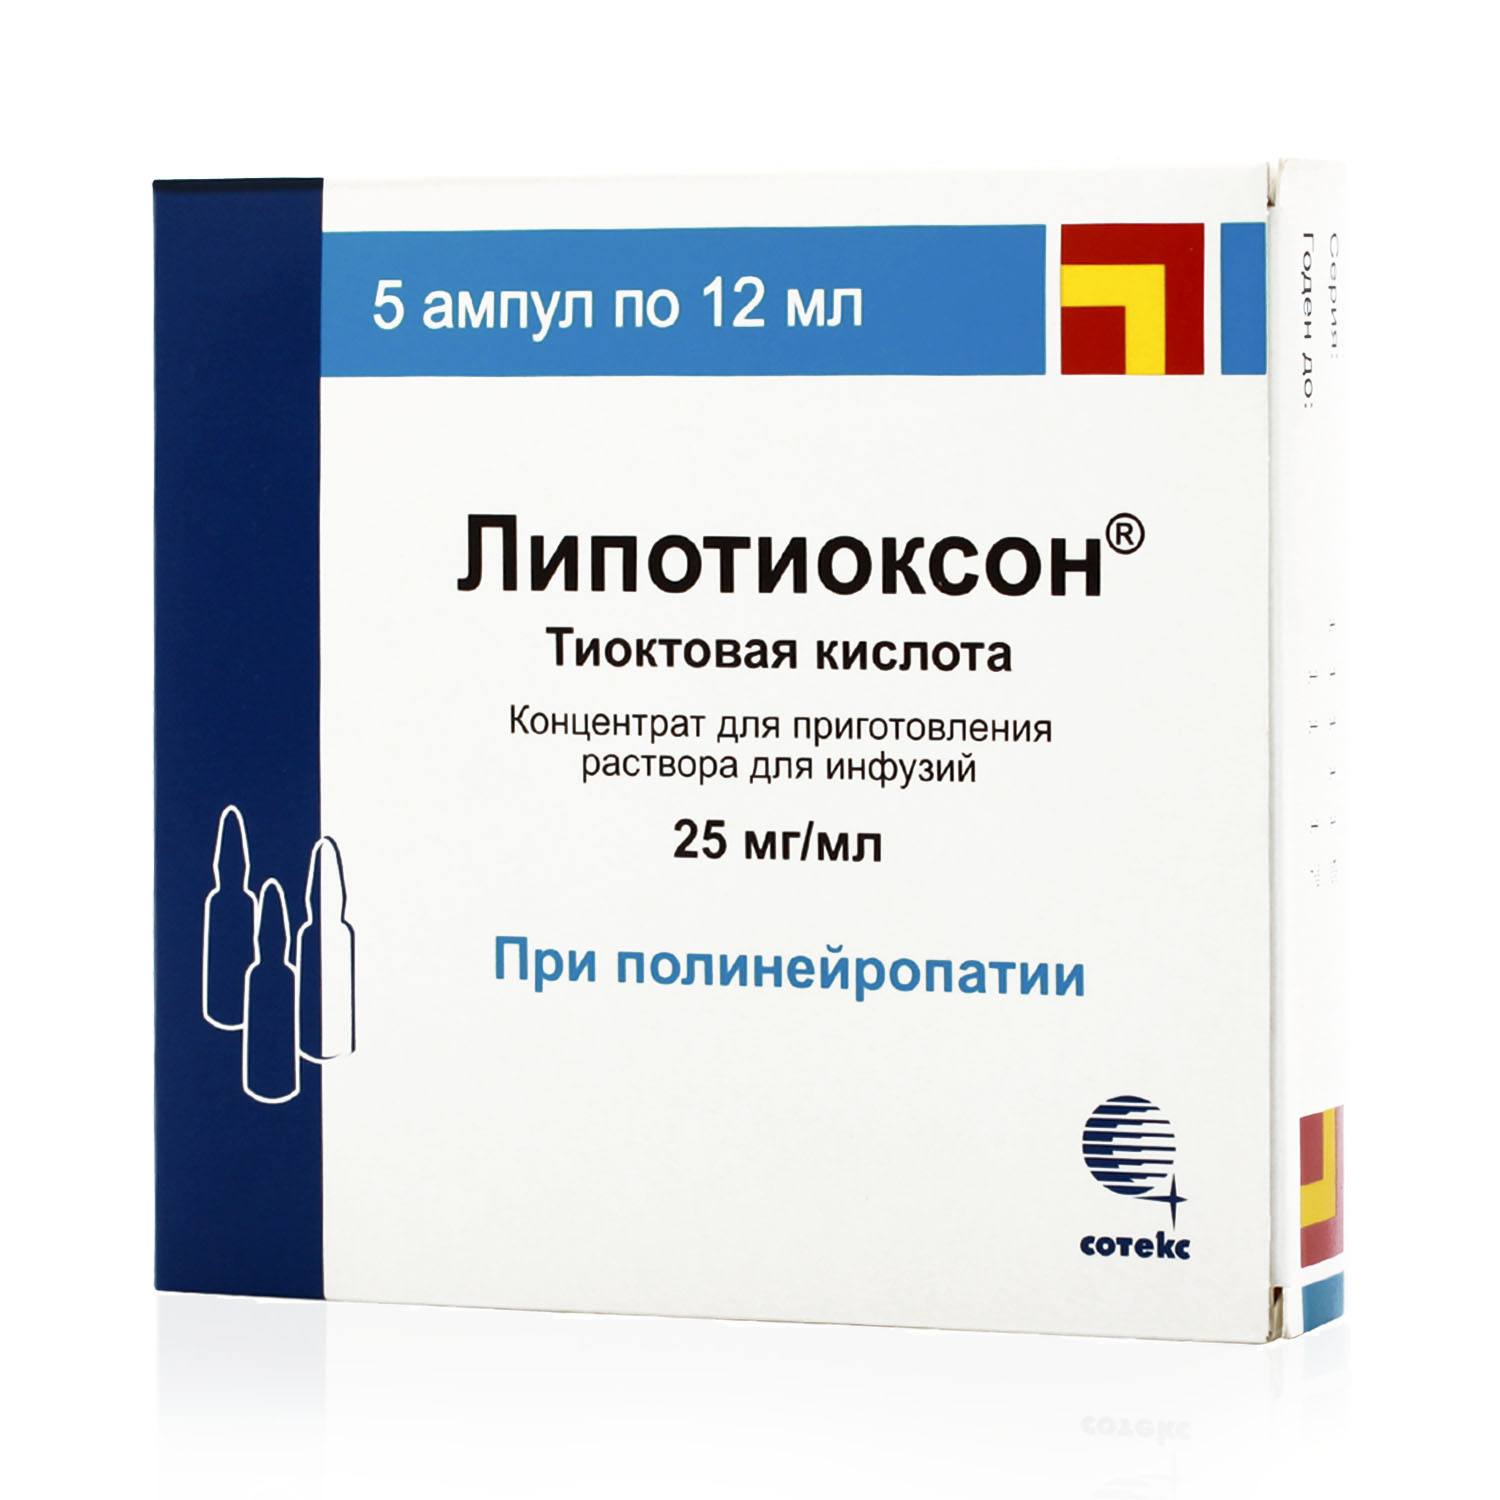 Купить Липотиоксон концентрат для приготовления раствора для инфузий 300 мг (25 мг/мл) ампулы 12 мл 5 шт., Сотекс ФармФирма